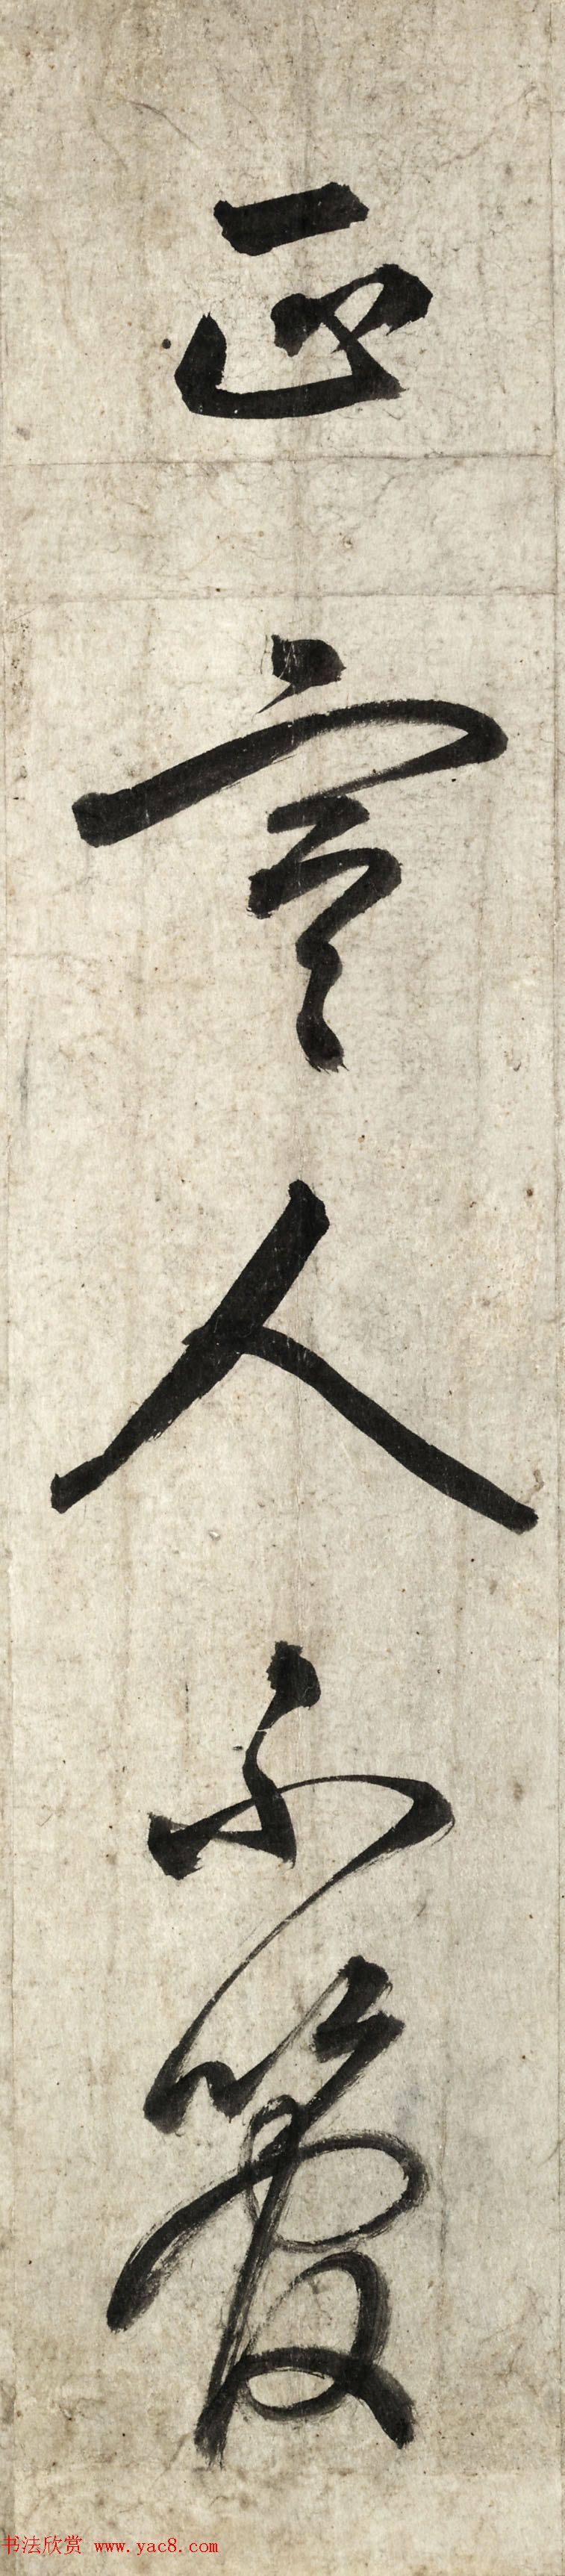 朝鲜儒士李滉书法欣赏《梅花诗》